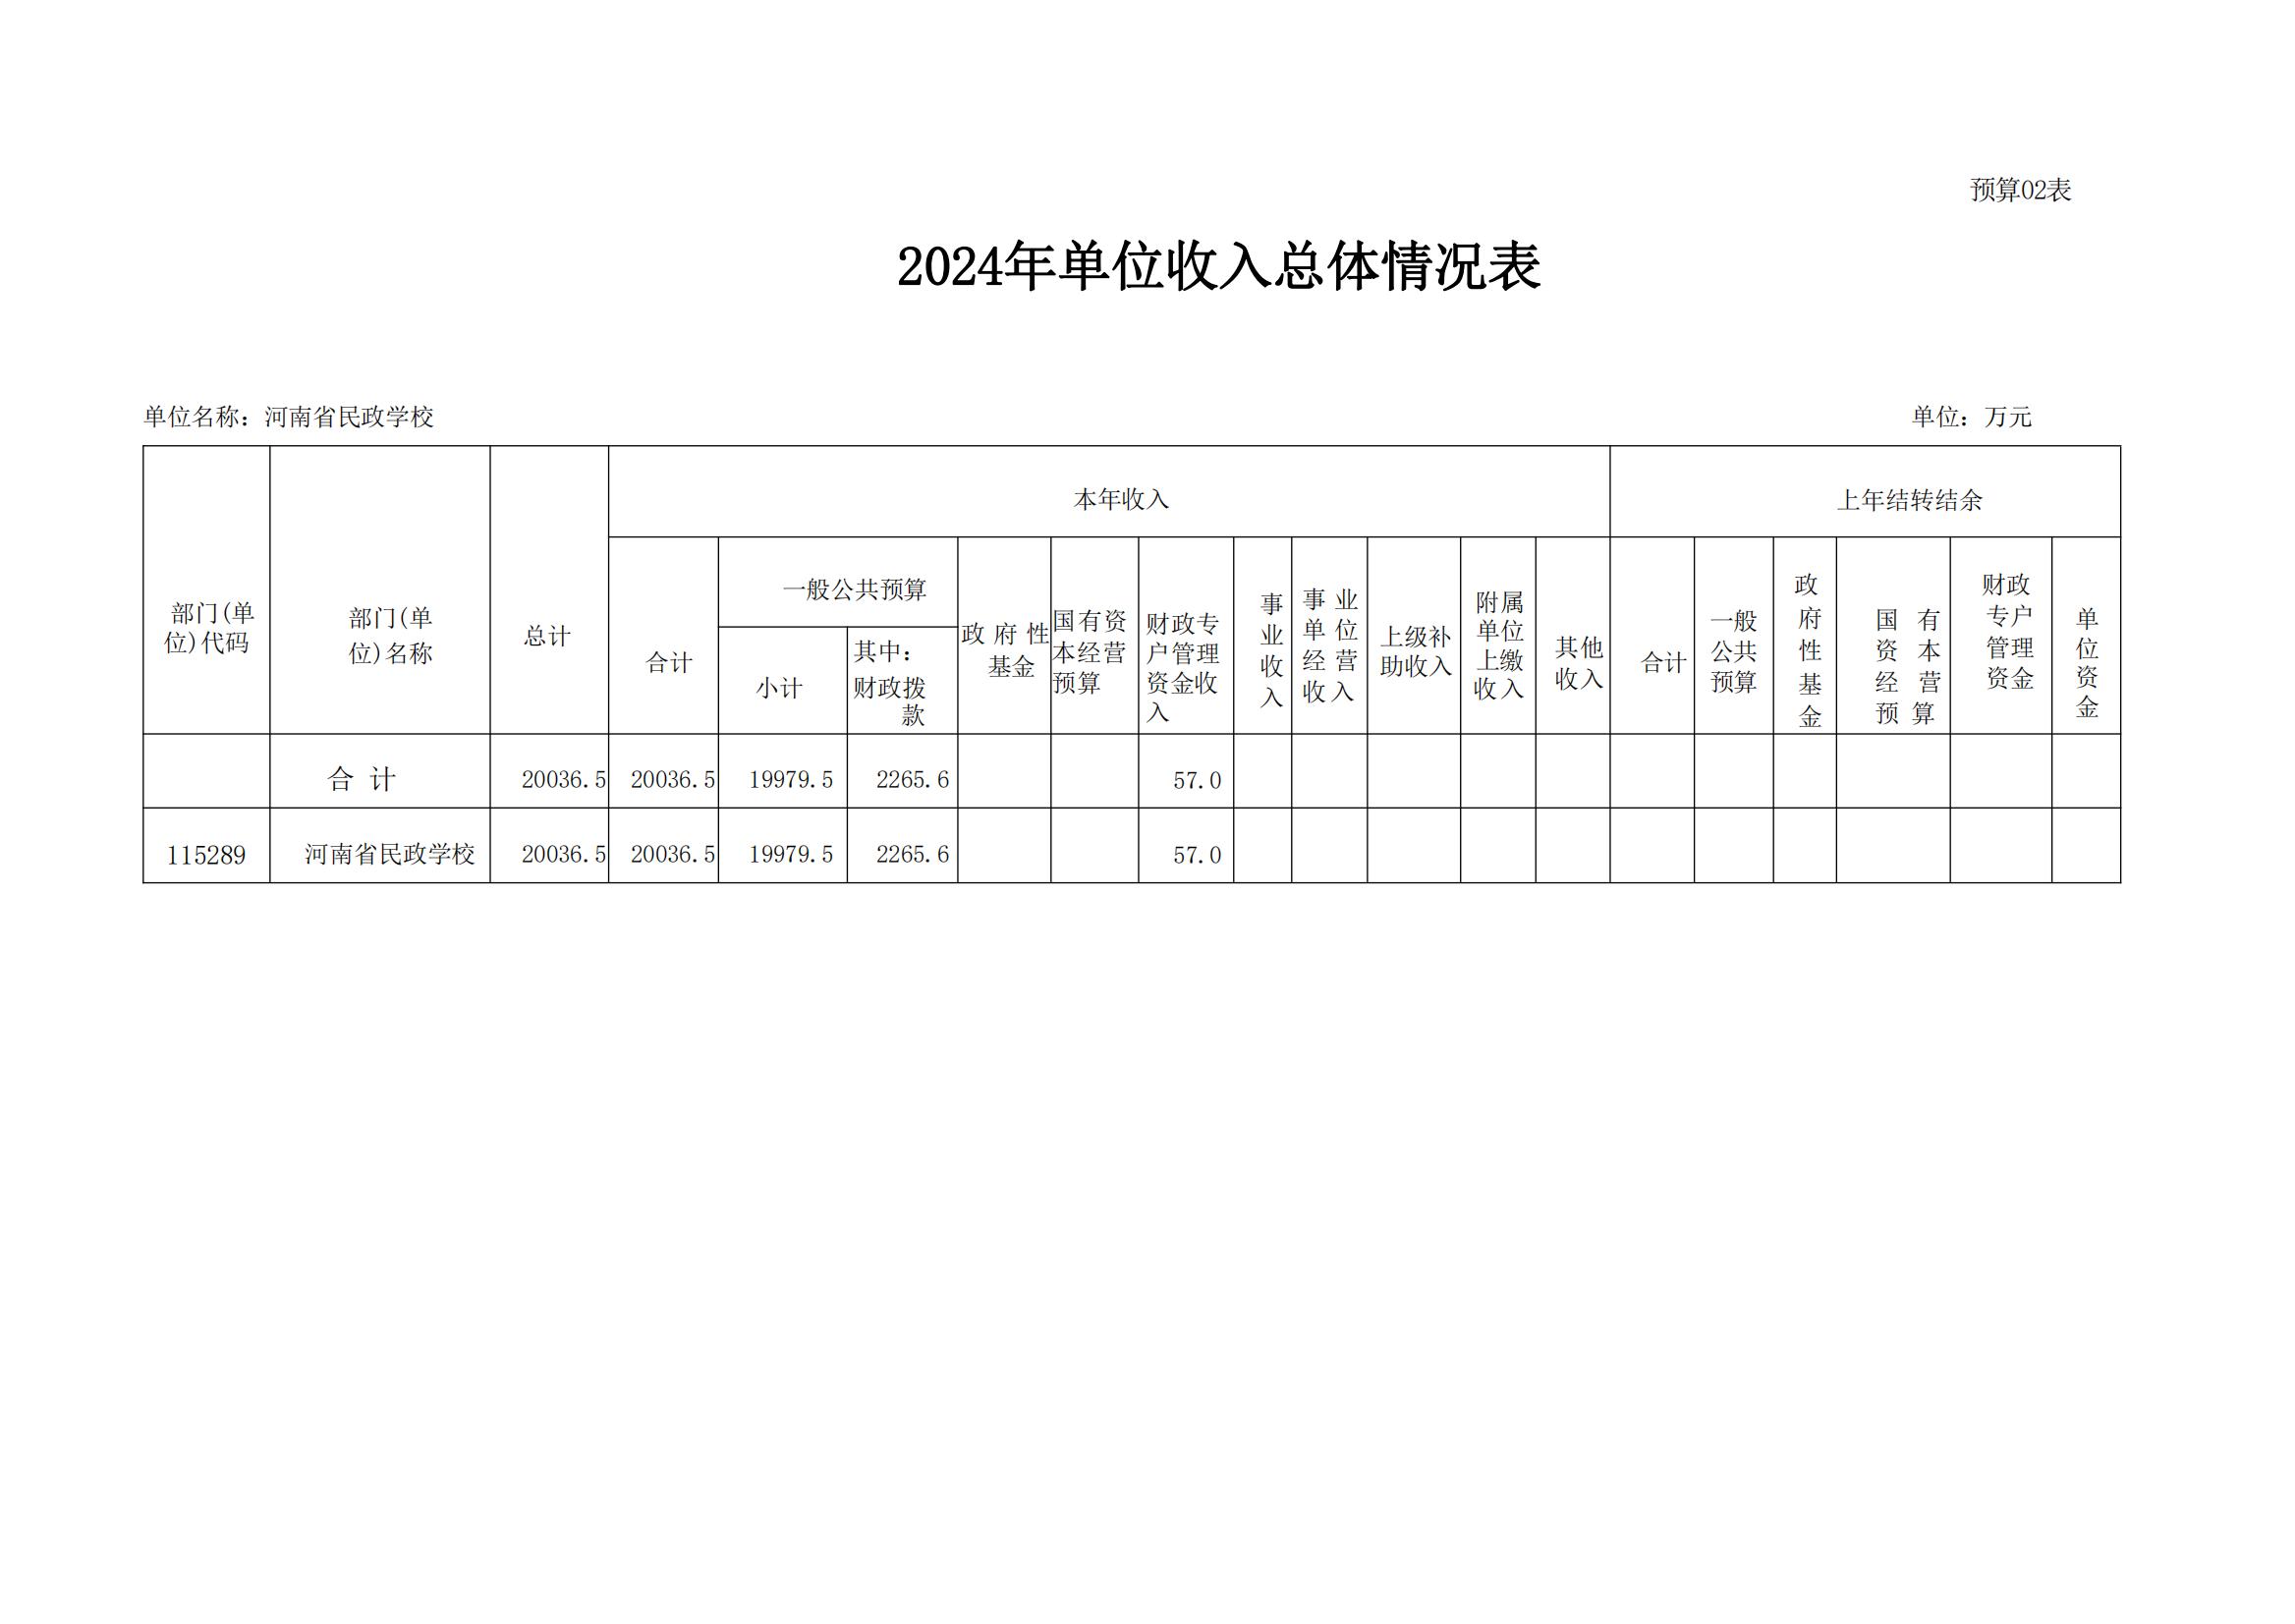 河南省民政学校2024年部门预算公开(1)_09.jpg